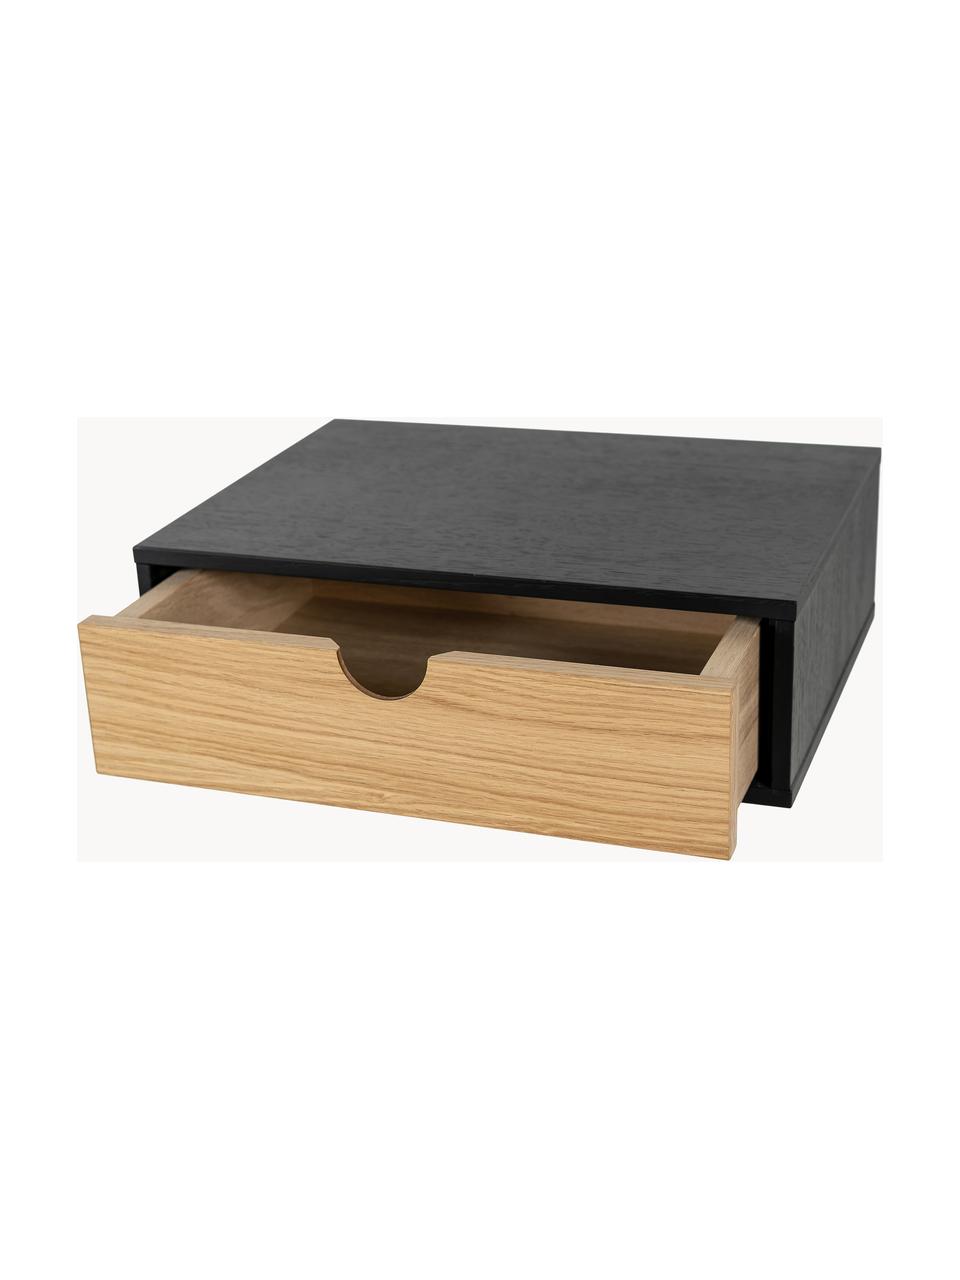 Nástěnný noční stolek Farsta, Dřevovláknitá deska střední hustoty (MDF) s dubovou dýhou, Dubové dřevo, černá, Š 40 cm, V 15 cm